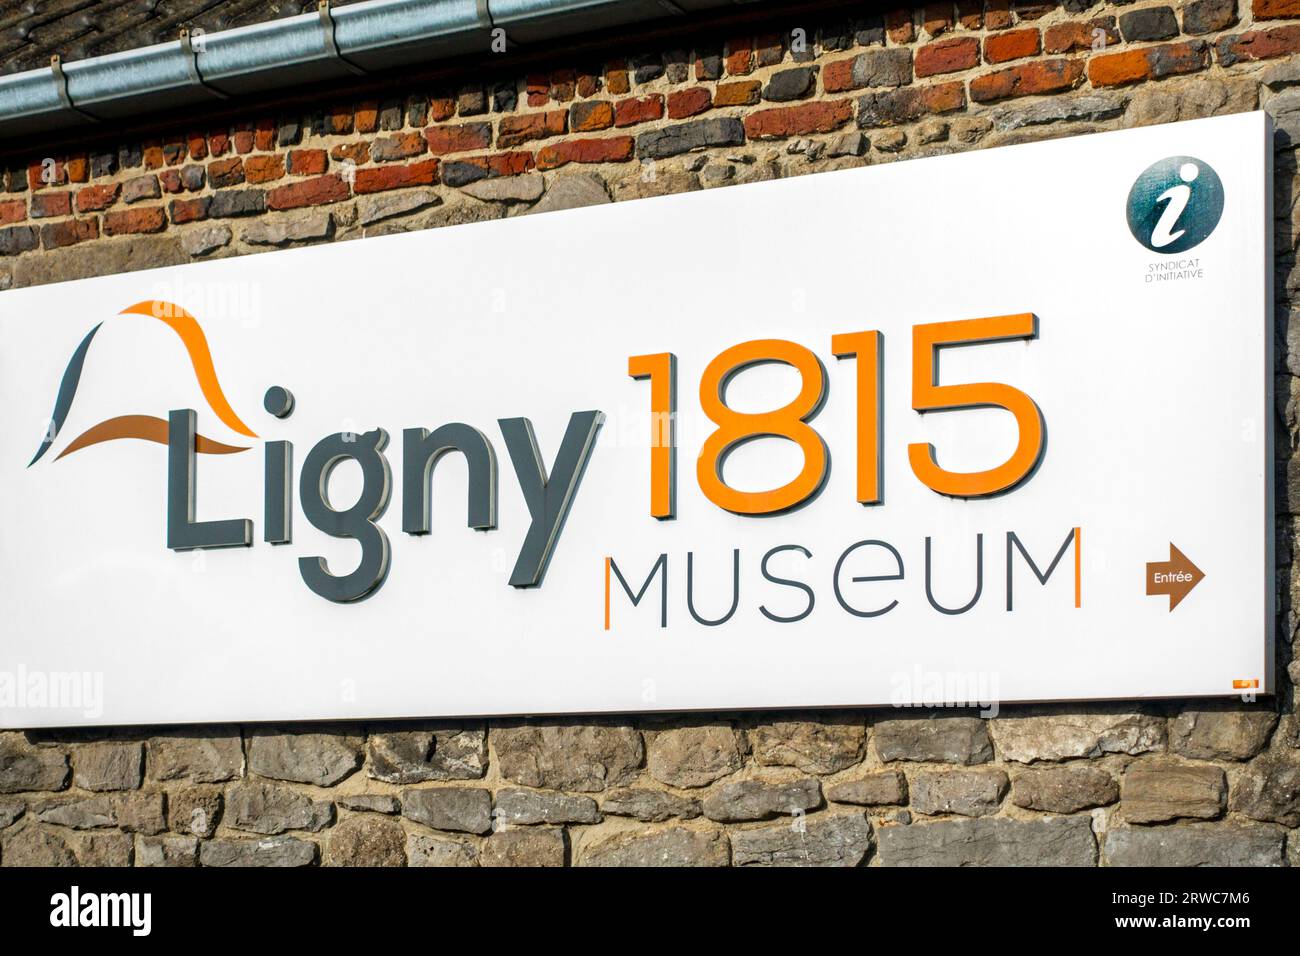 Ligny 1815 Museum, lugar de la Batalla de Ligny de 1815, donde Napoleón logró su última victoria, derrotando a Blücher, Sombreffe, Namur, Valonia, y otros. Bélgica Foto de stock